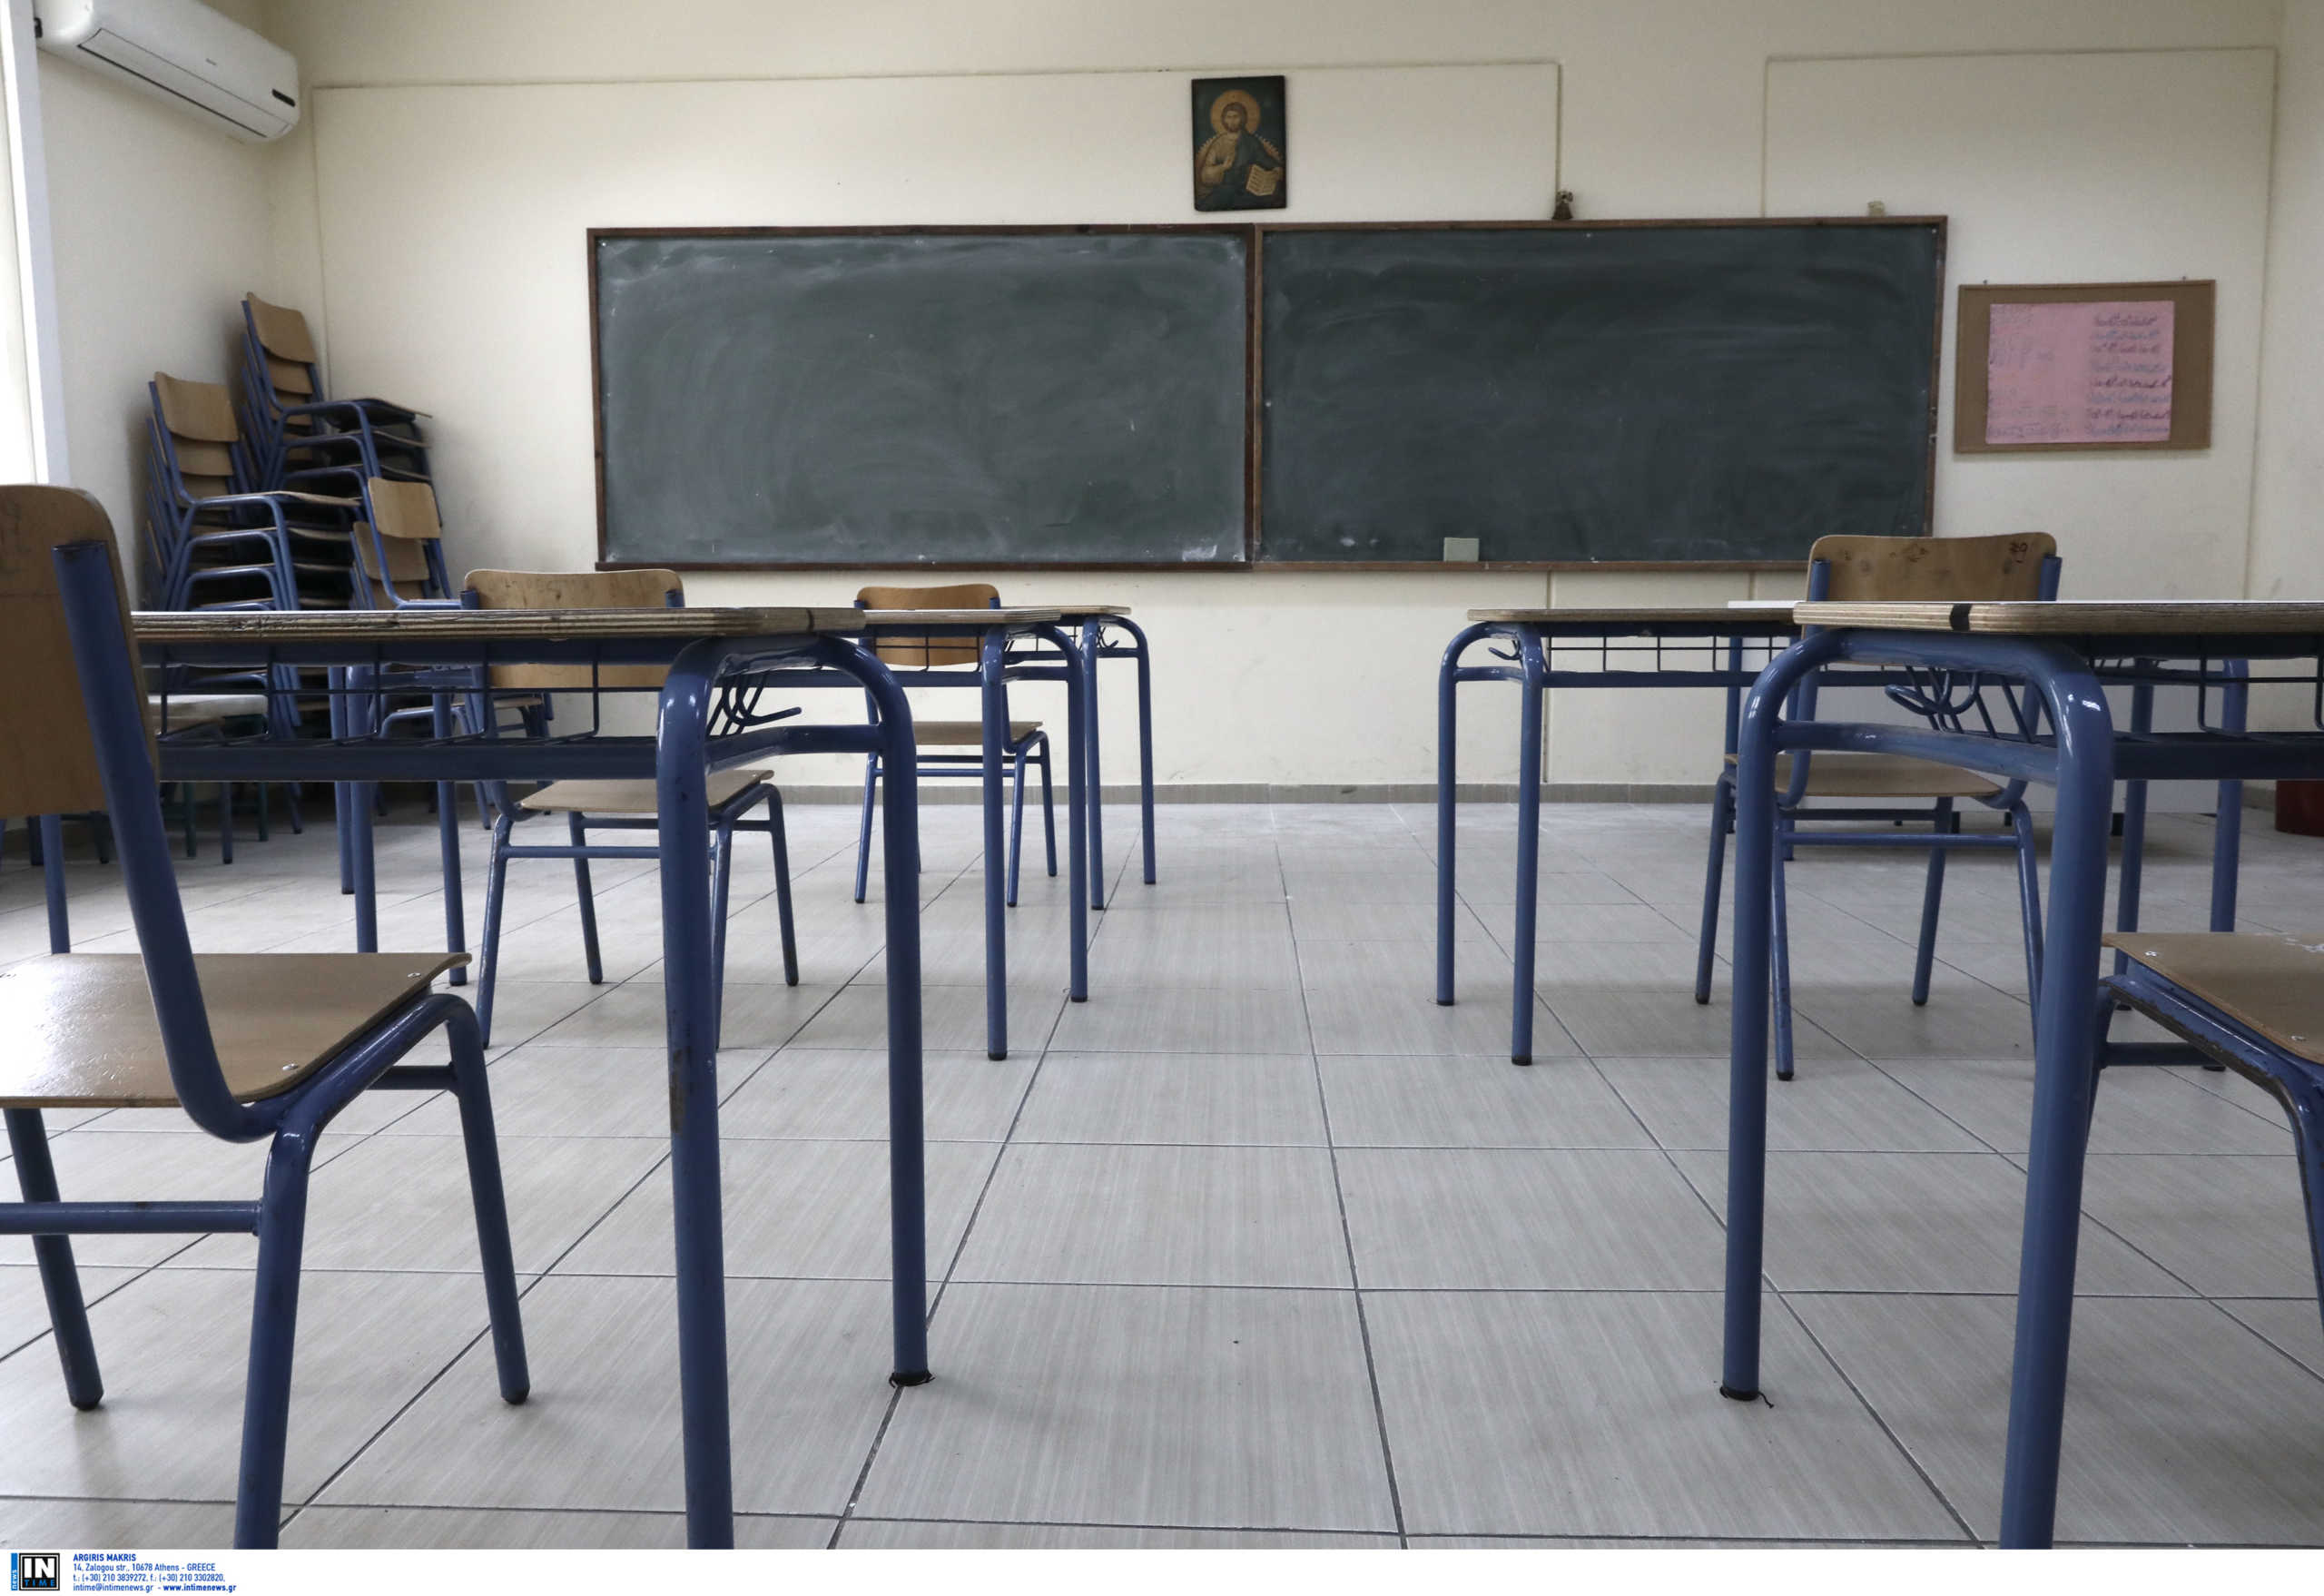 ΣΕΚ – ΠΕΟ διαβεβαιώνουν τους εκπαιδευτικούς ότι ζητούν διασφάλιση της απασχόλησής τους στα απογευματινά προγράμματα